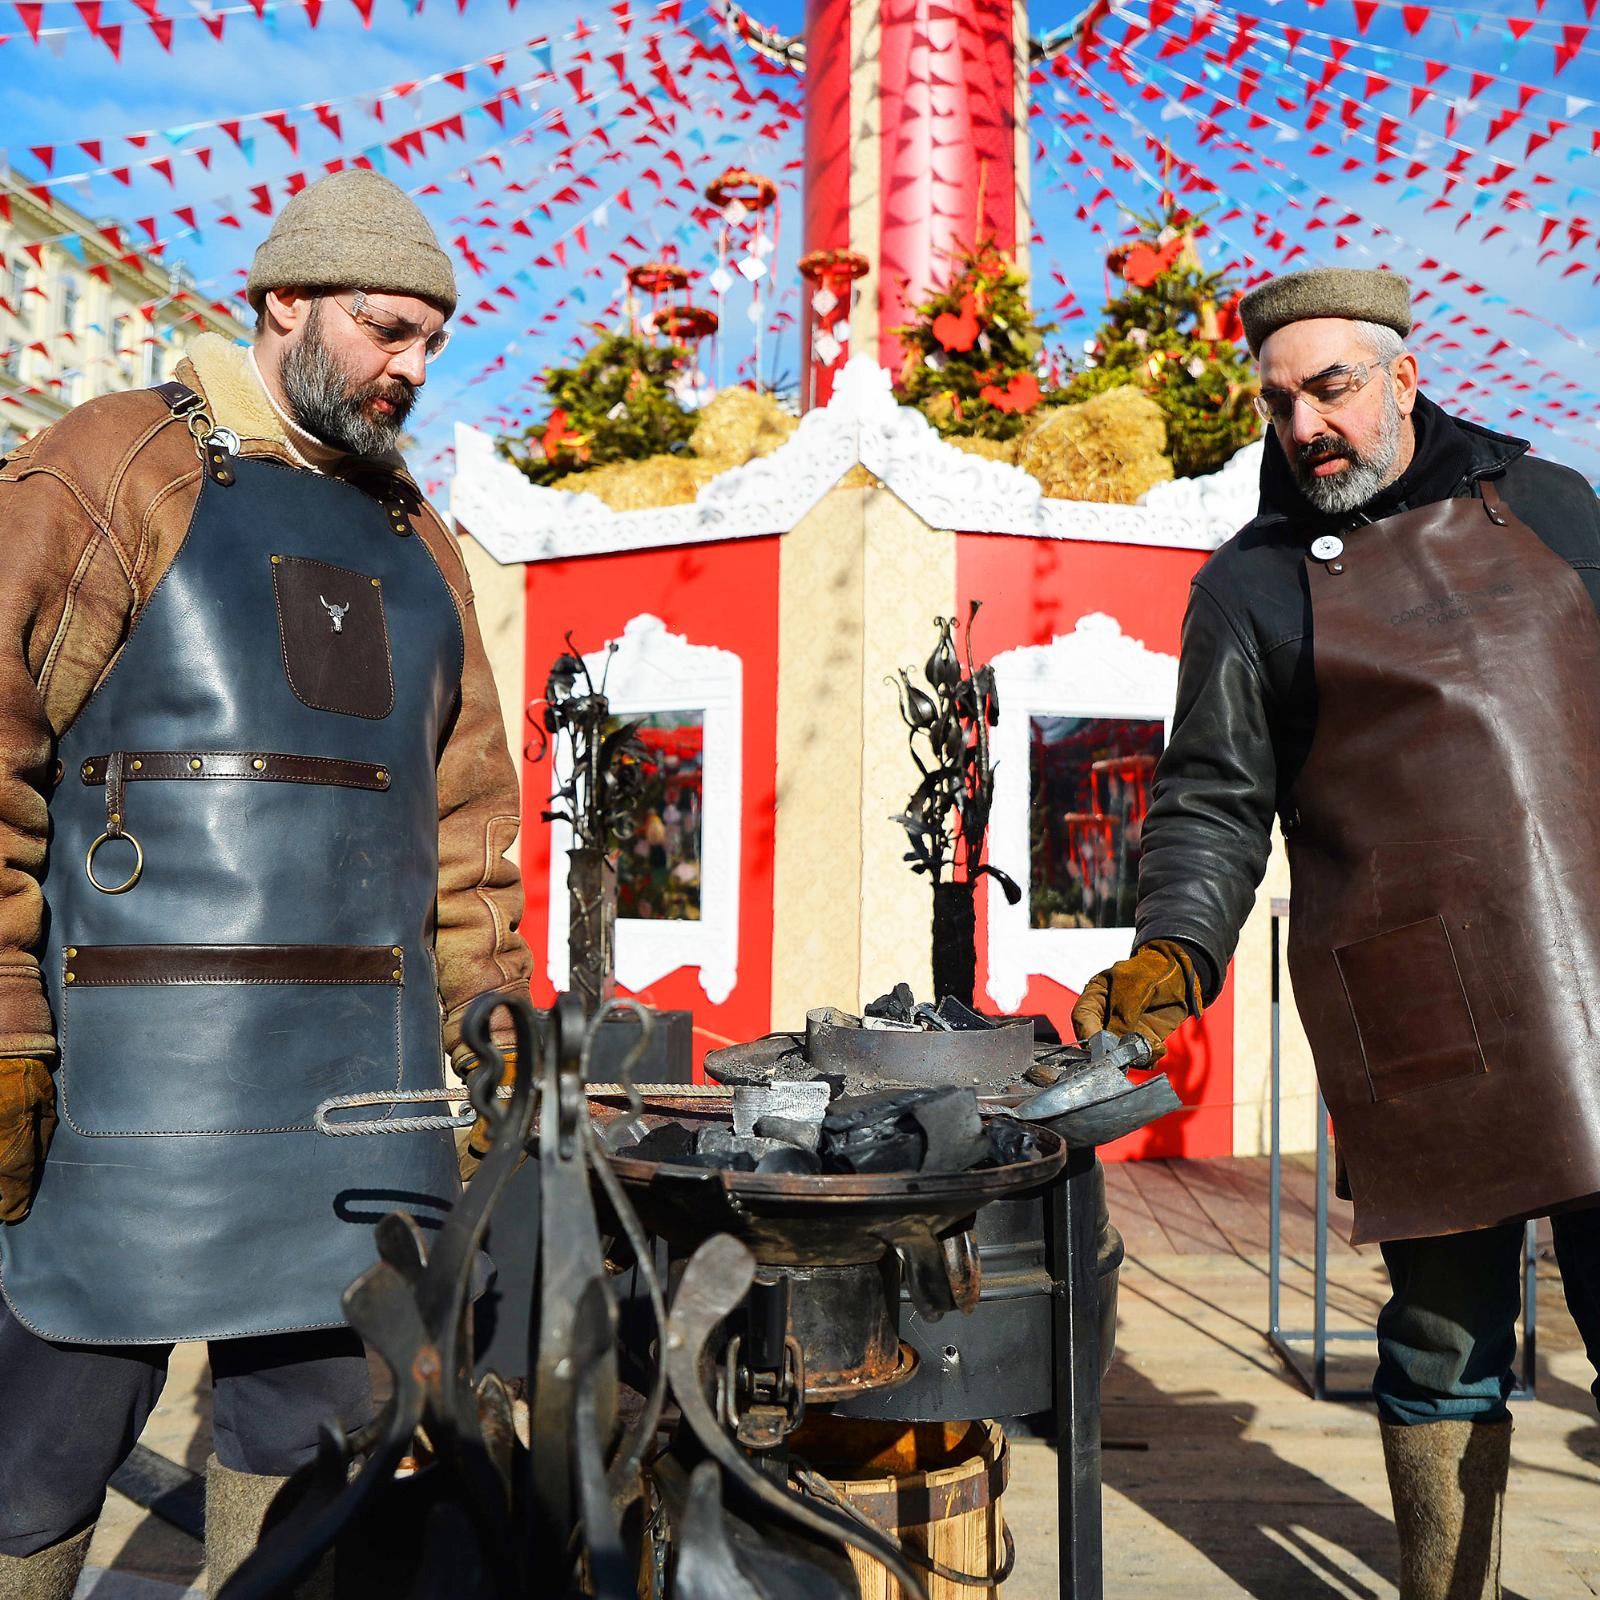 Москва встречает весну ярко и вкусно: на фестивале «Московская Масленица» в столице пройдет 1200 кулинарных и творческих мастер-классов